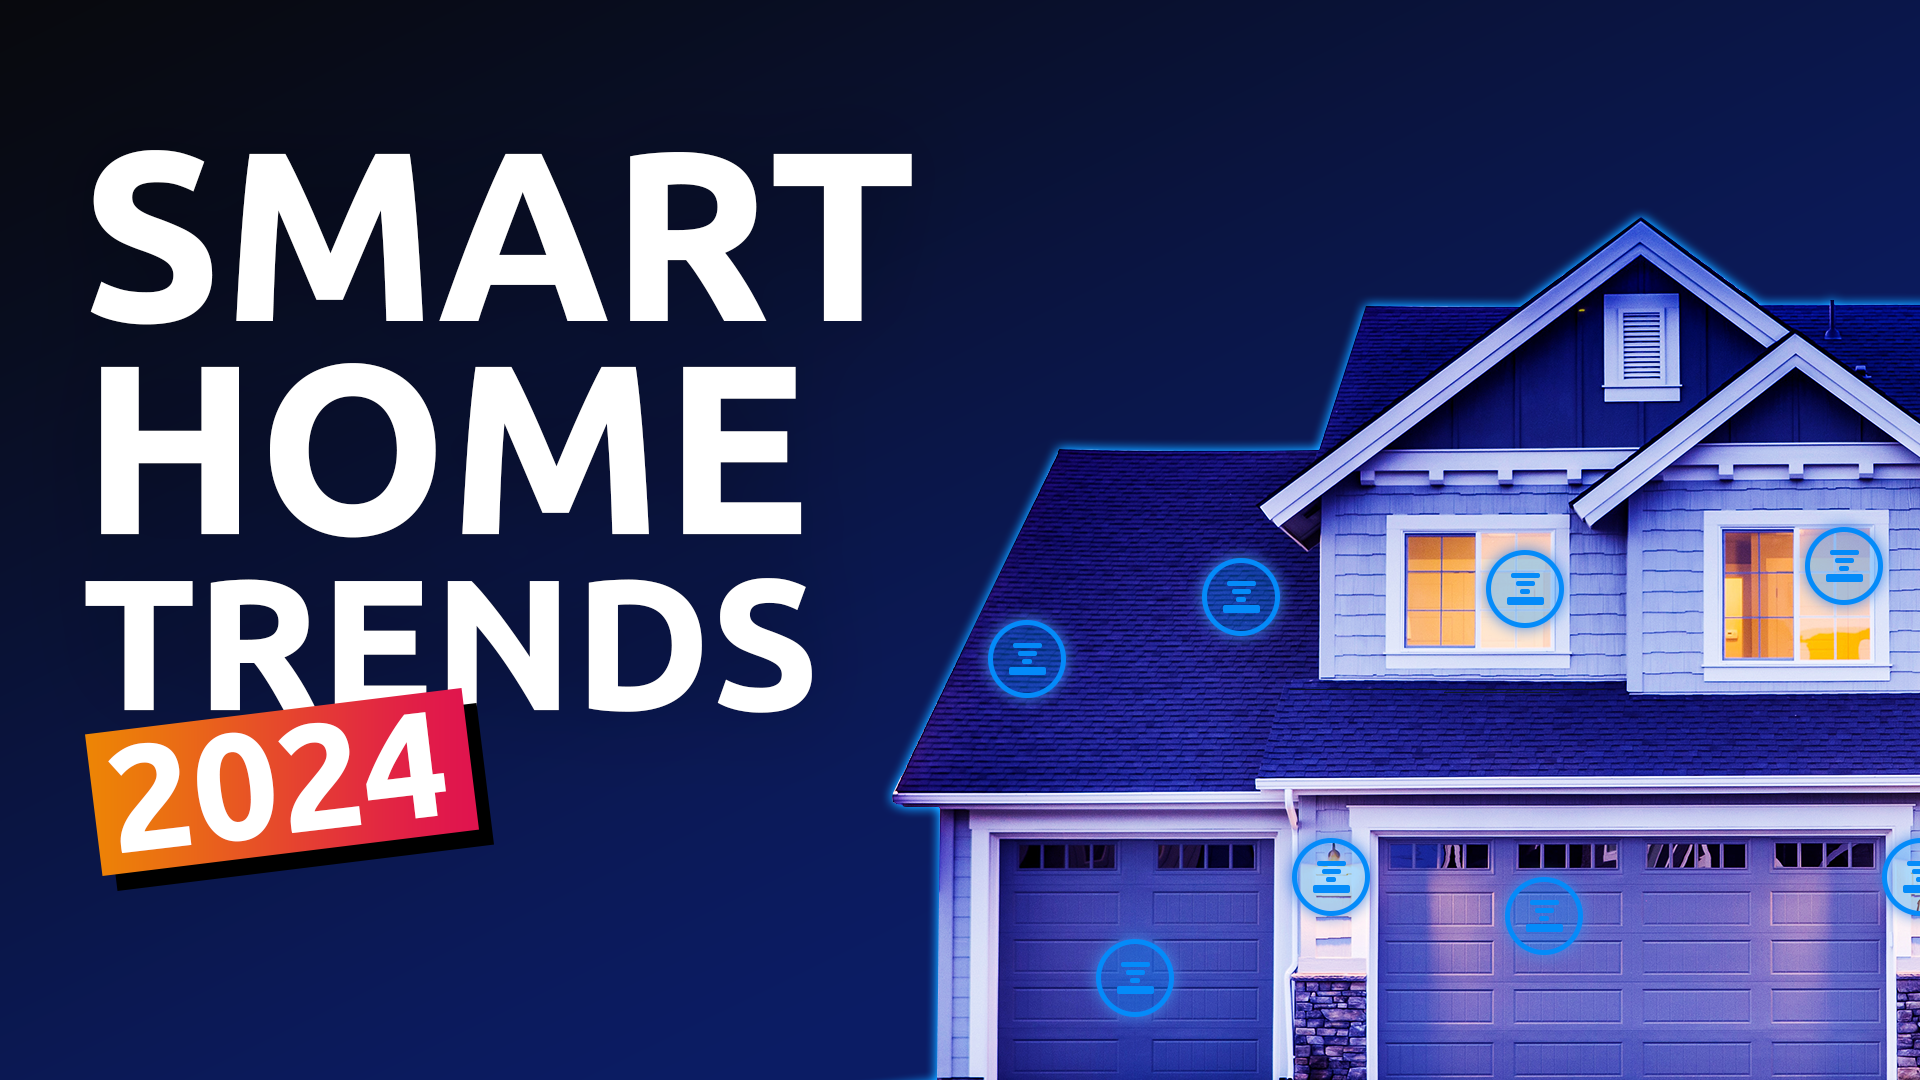 24 Best Smart Home Devices 2023 - Smart Home Gadgets, Appliances